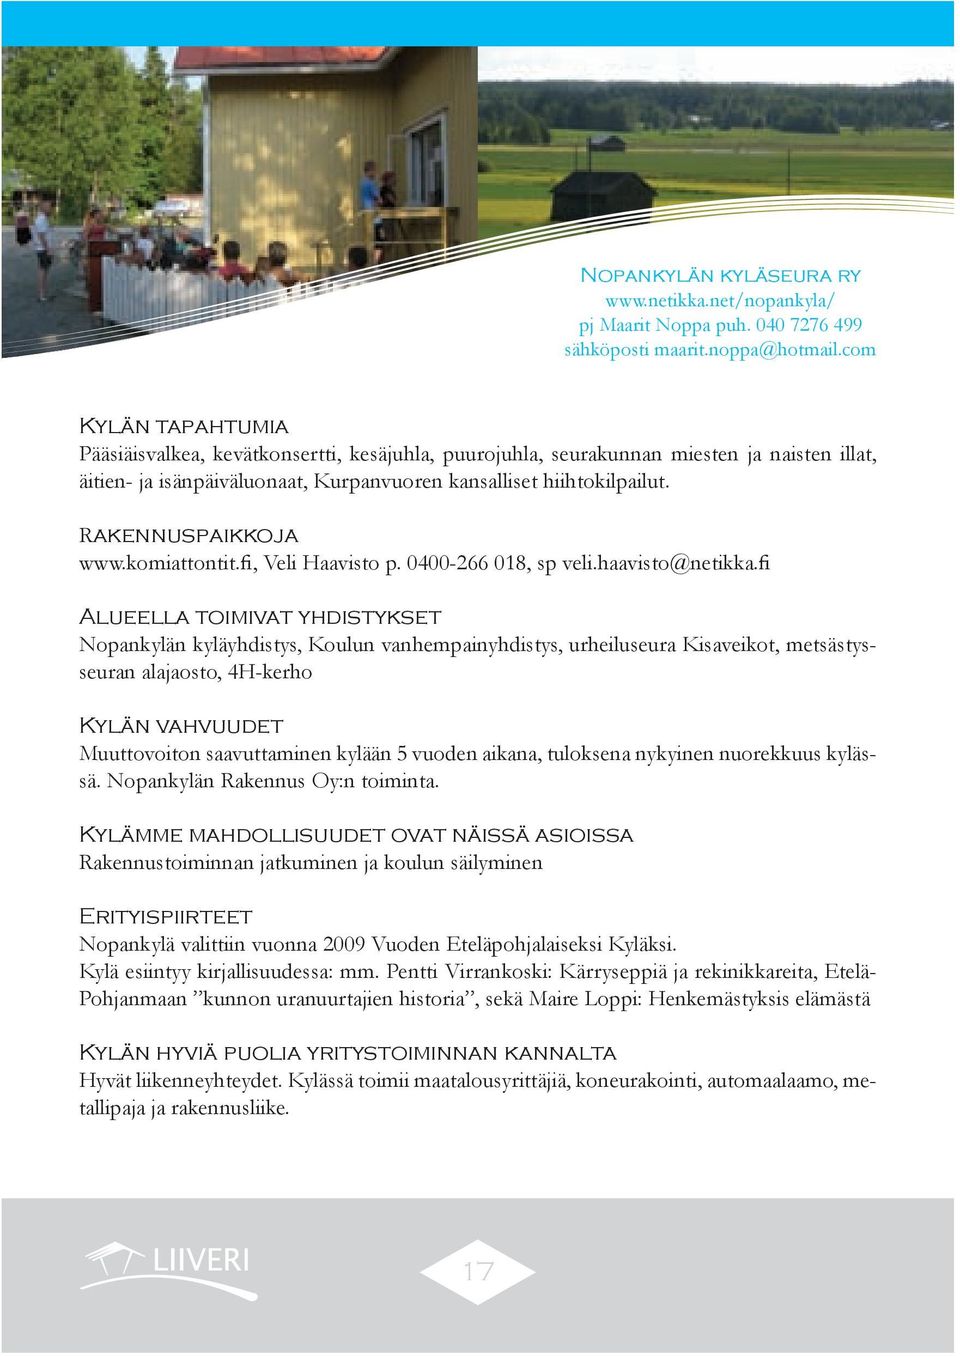 Rakennuspaikkoja www.komiattontit.fi, Veli Haavisto p. 0400-266 018, sp veli.haavisto@netikka.